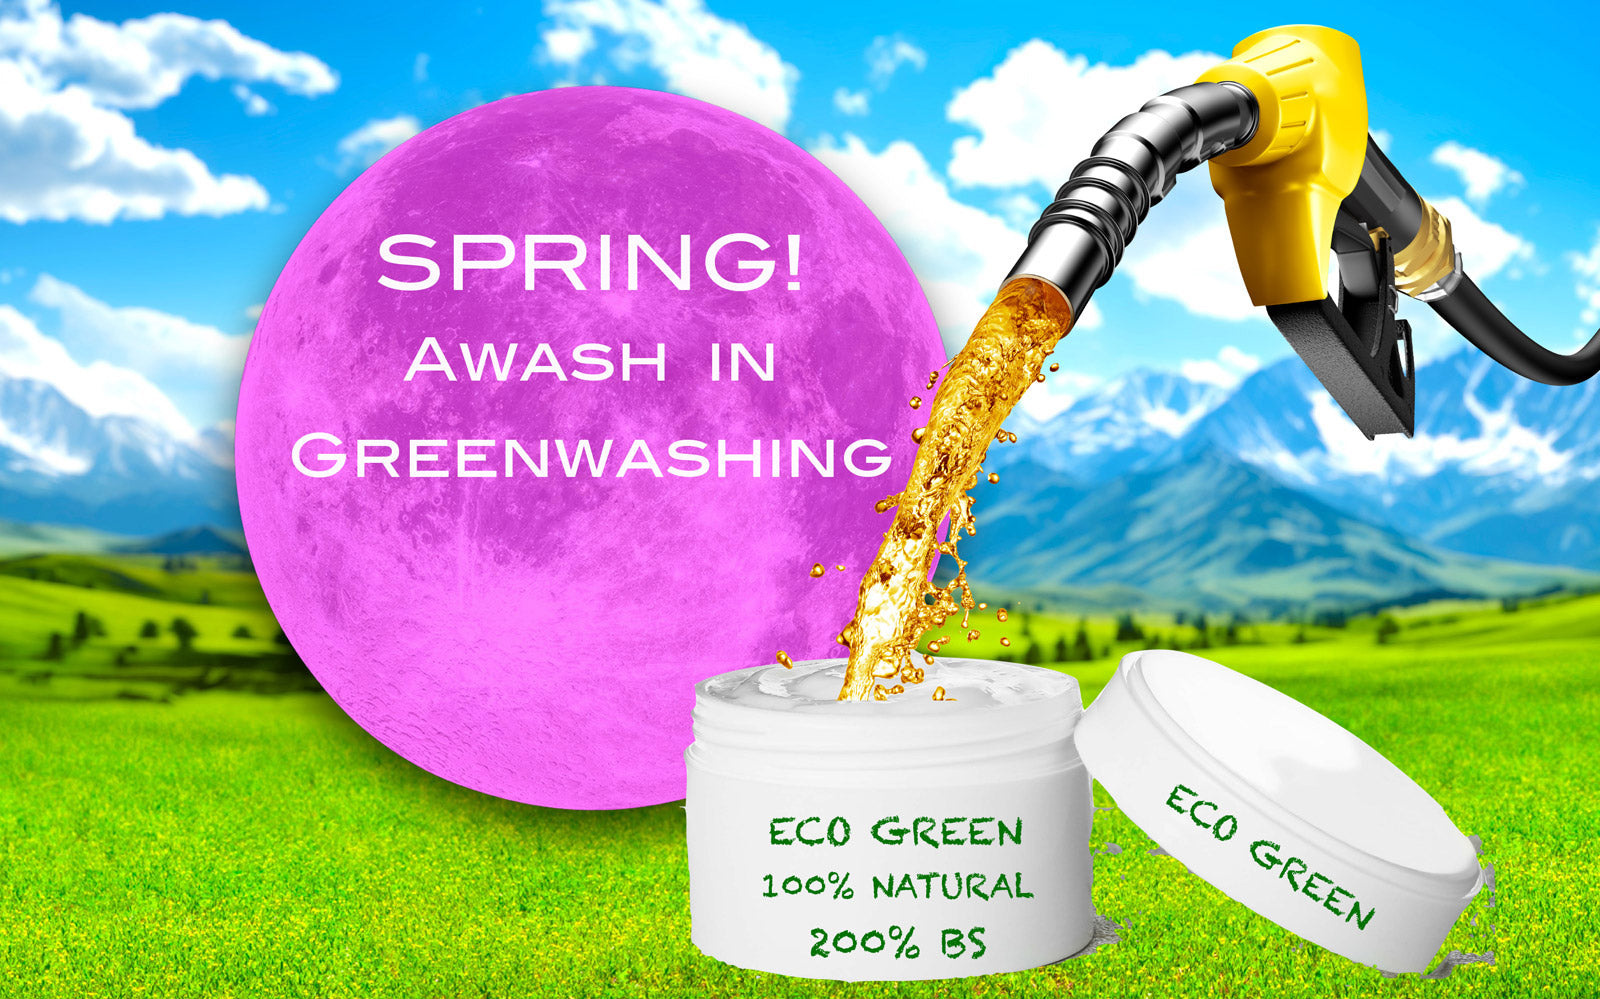 Spring! Awash in Greenwashing